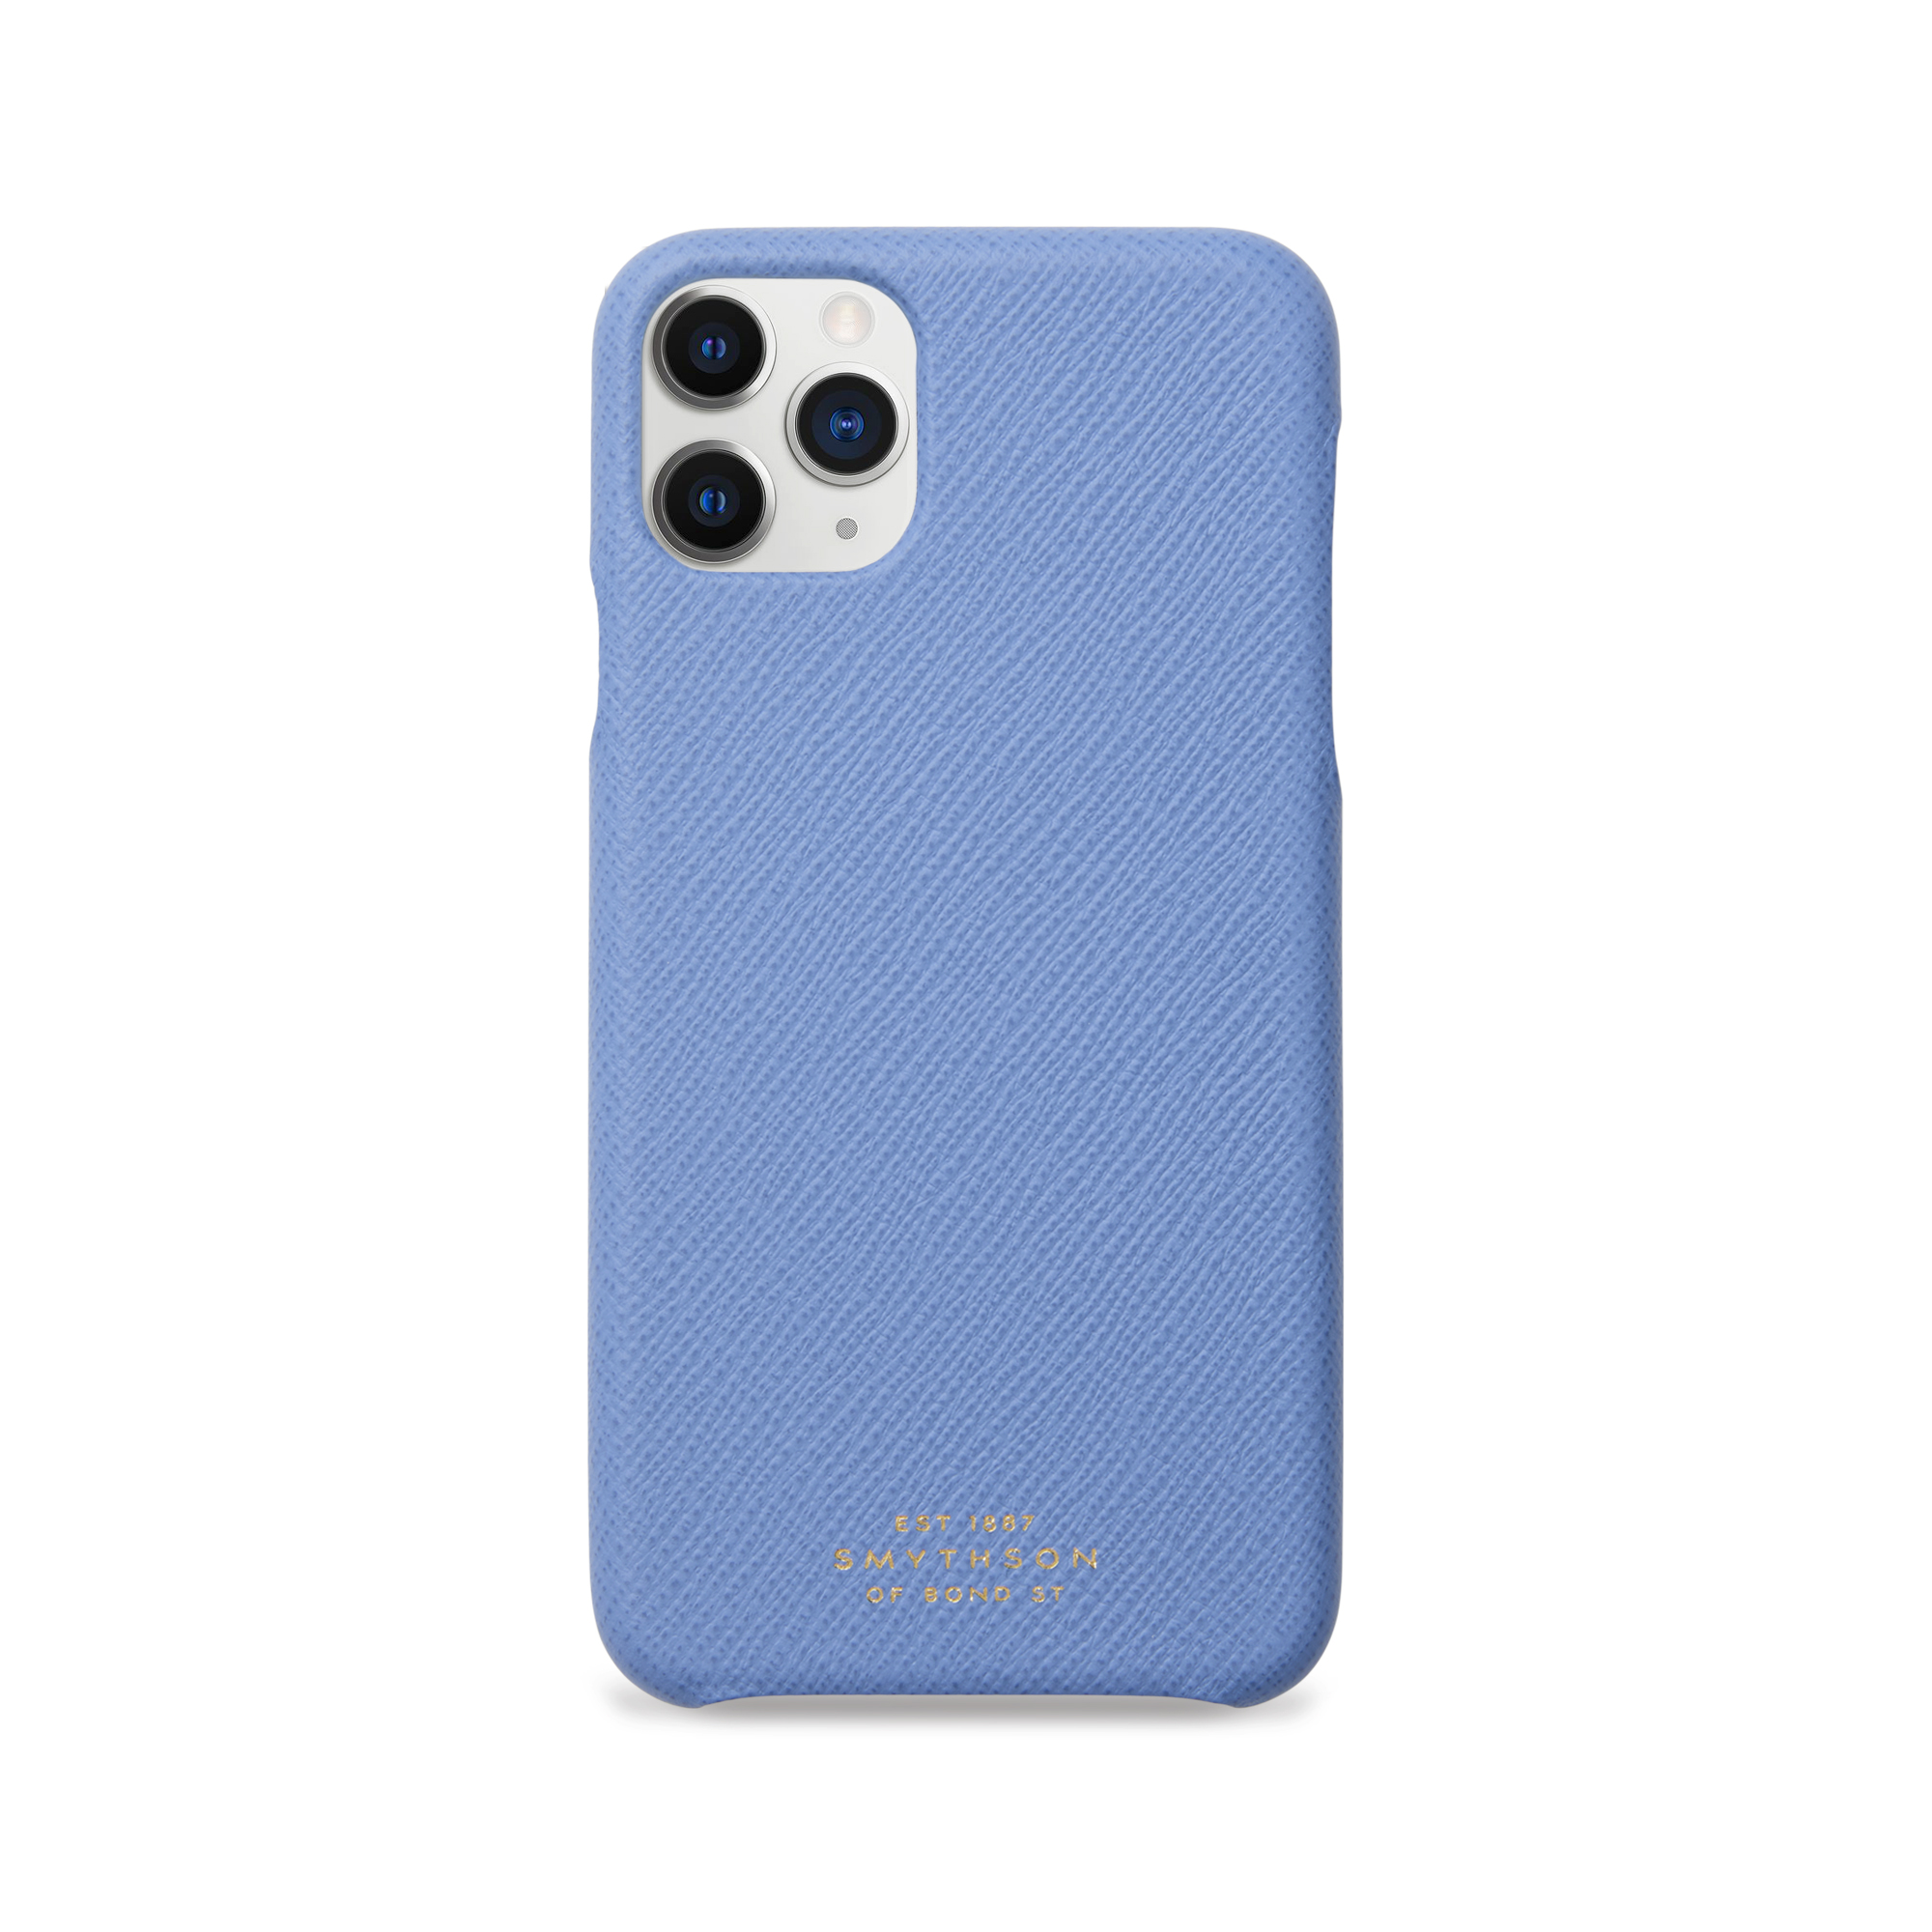 Smythson Panama Iphone 11 Pro Max Case In Nile Blue